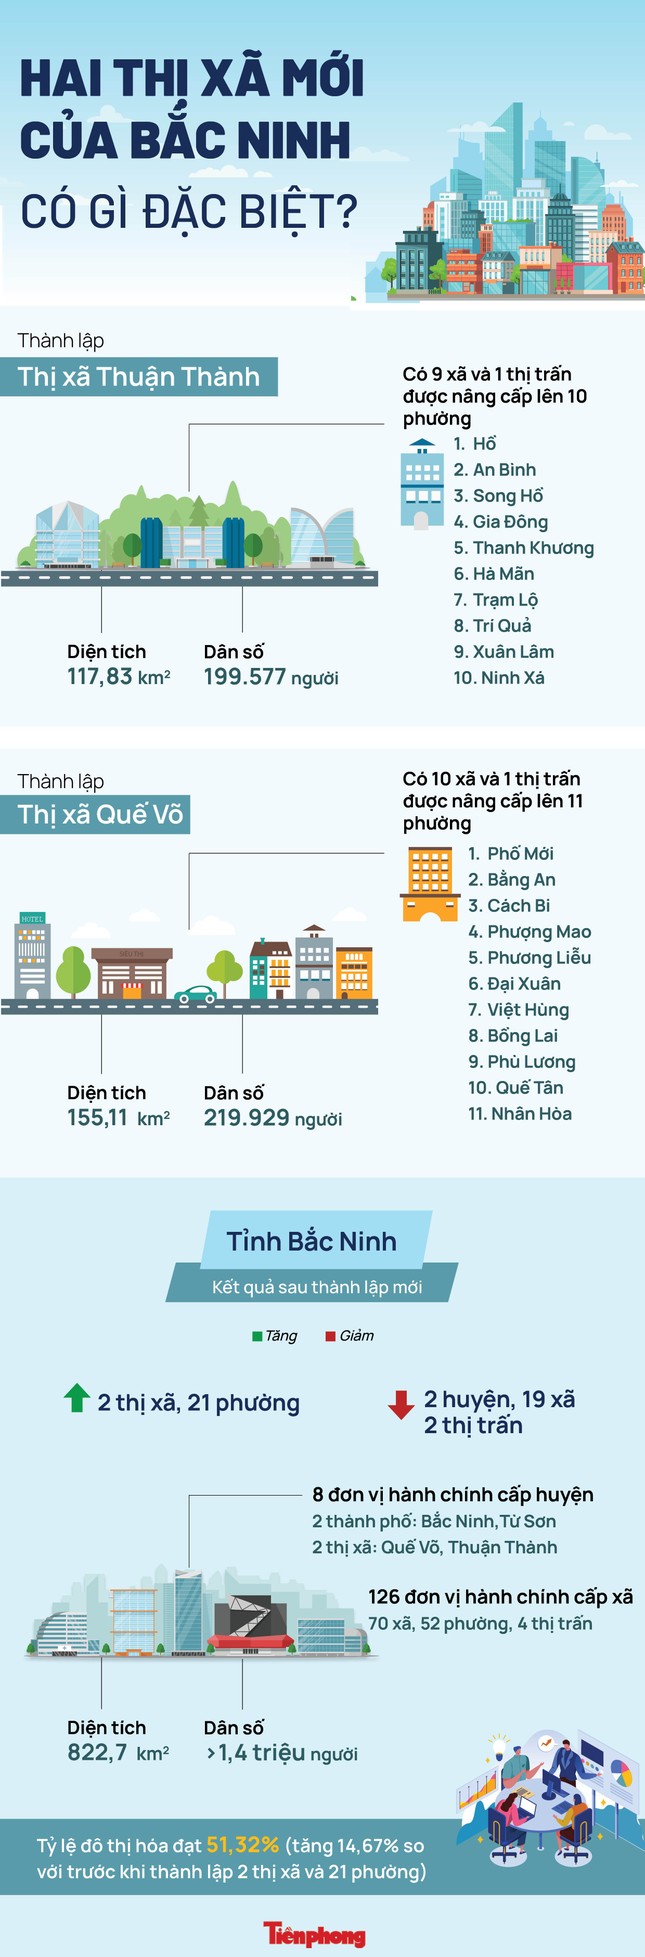 Bắc Ninh: Hai huyện Thuận Thành và Quế Võ được nâng cấp lên thị xã - Ảnh 2.